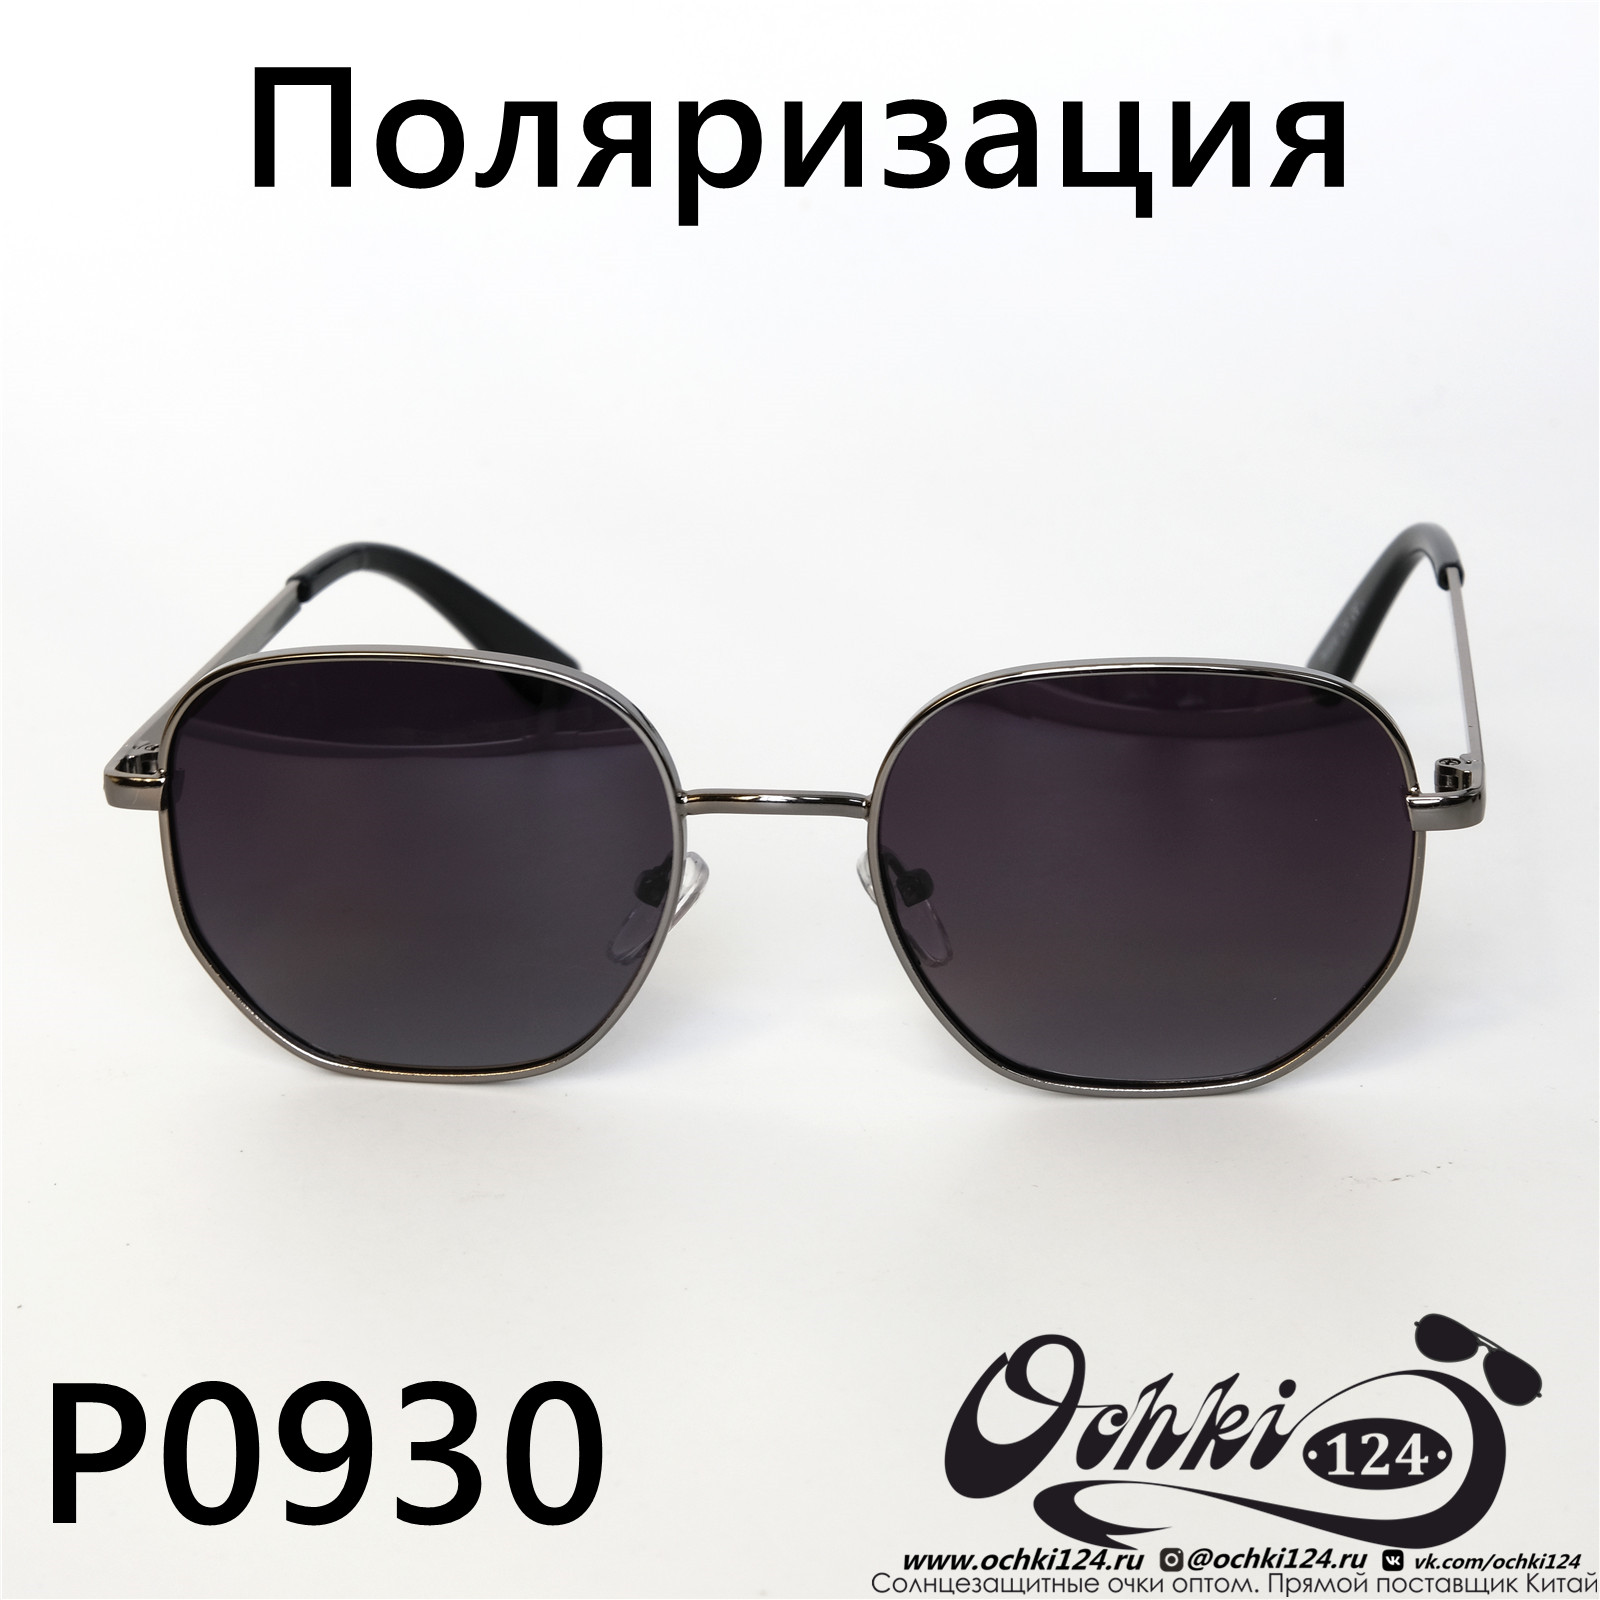  Солнцезащитные очки картинка 2022 Женские Поляризованные Квадратные  P0930-4 